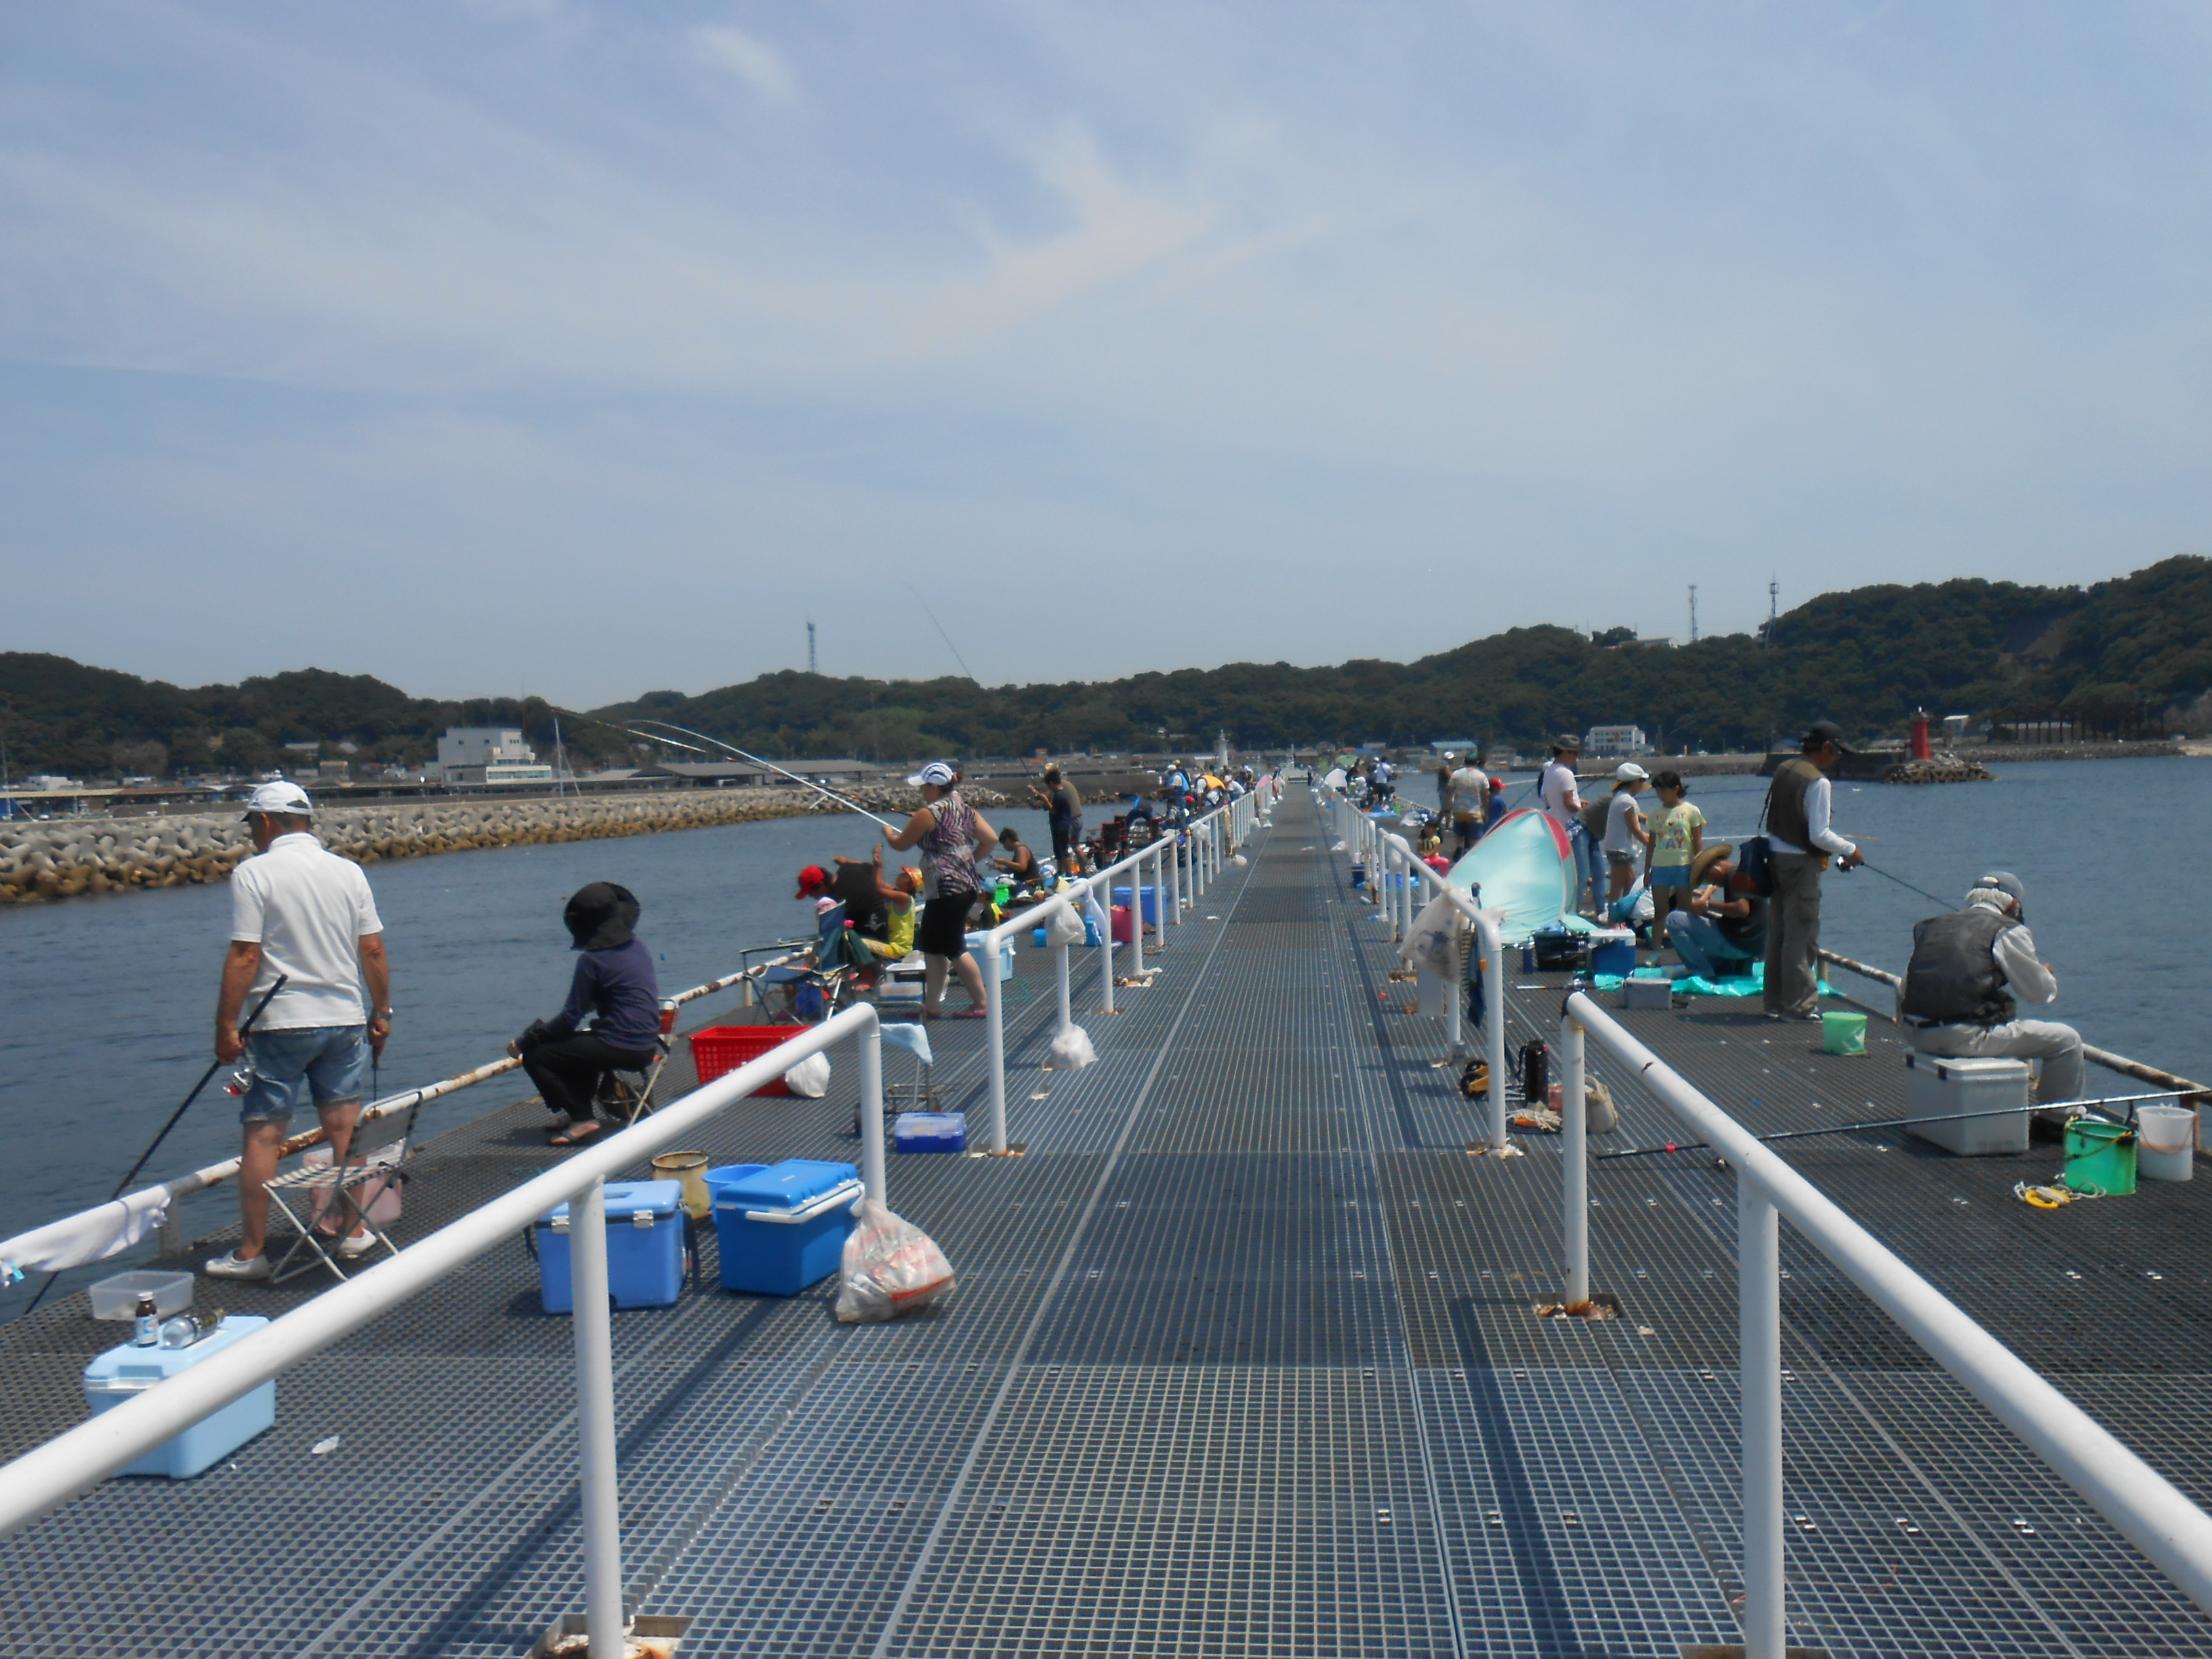 釣り 桟橋 豊浜 豊浜漁港の桟橋が釣人でいっぱいで入れなかったので、師崎港で釣ったら全然釣れませんでした。